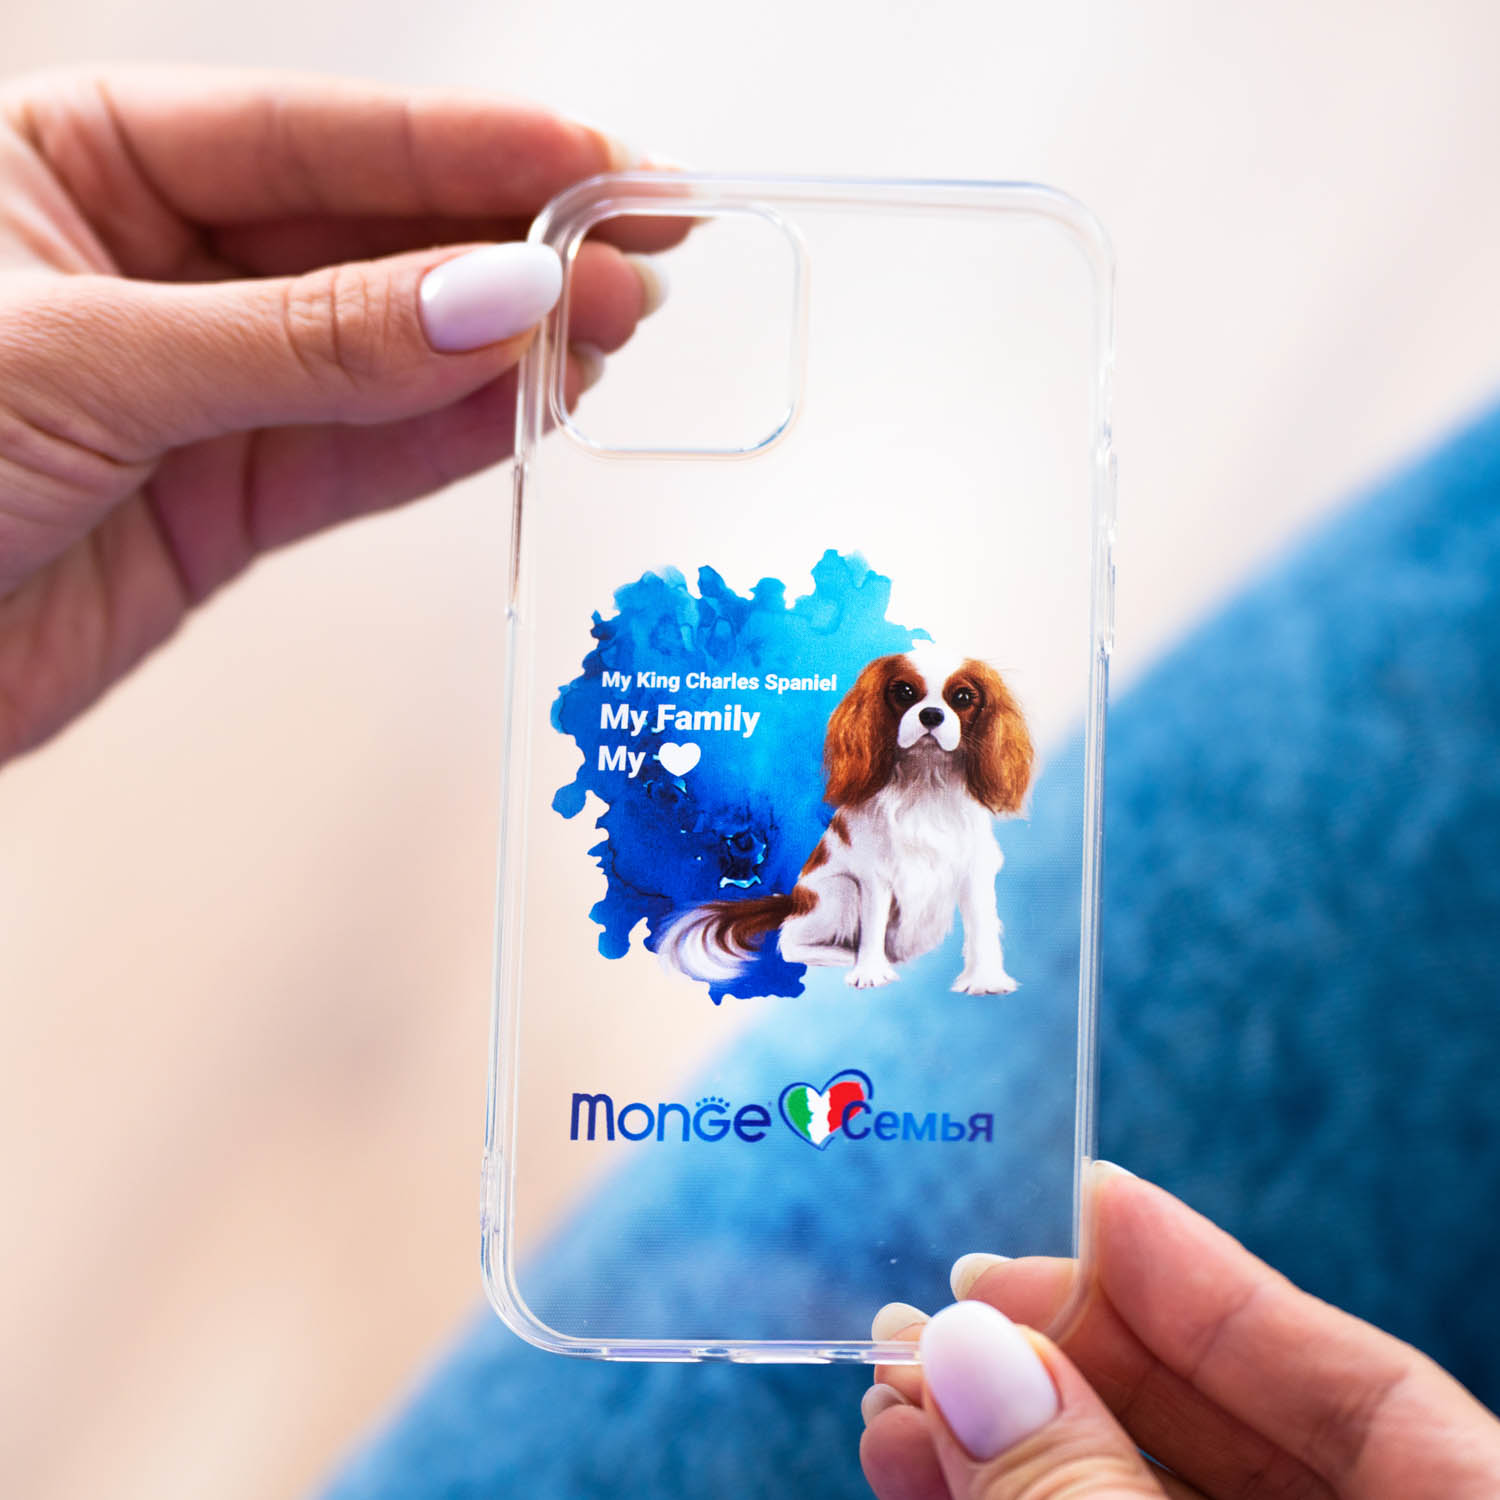 Чехол для телефона Monge семья модель iPhone 10 кинг-чарльз-спаниель